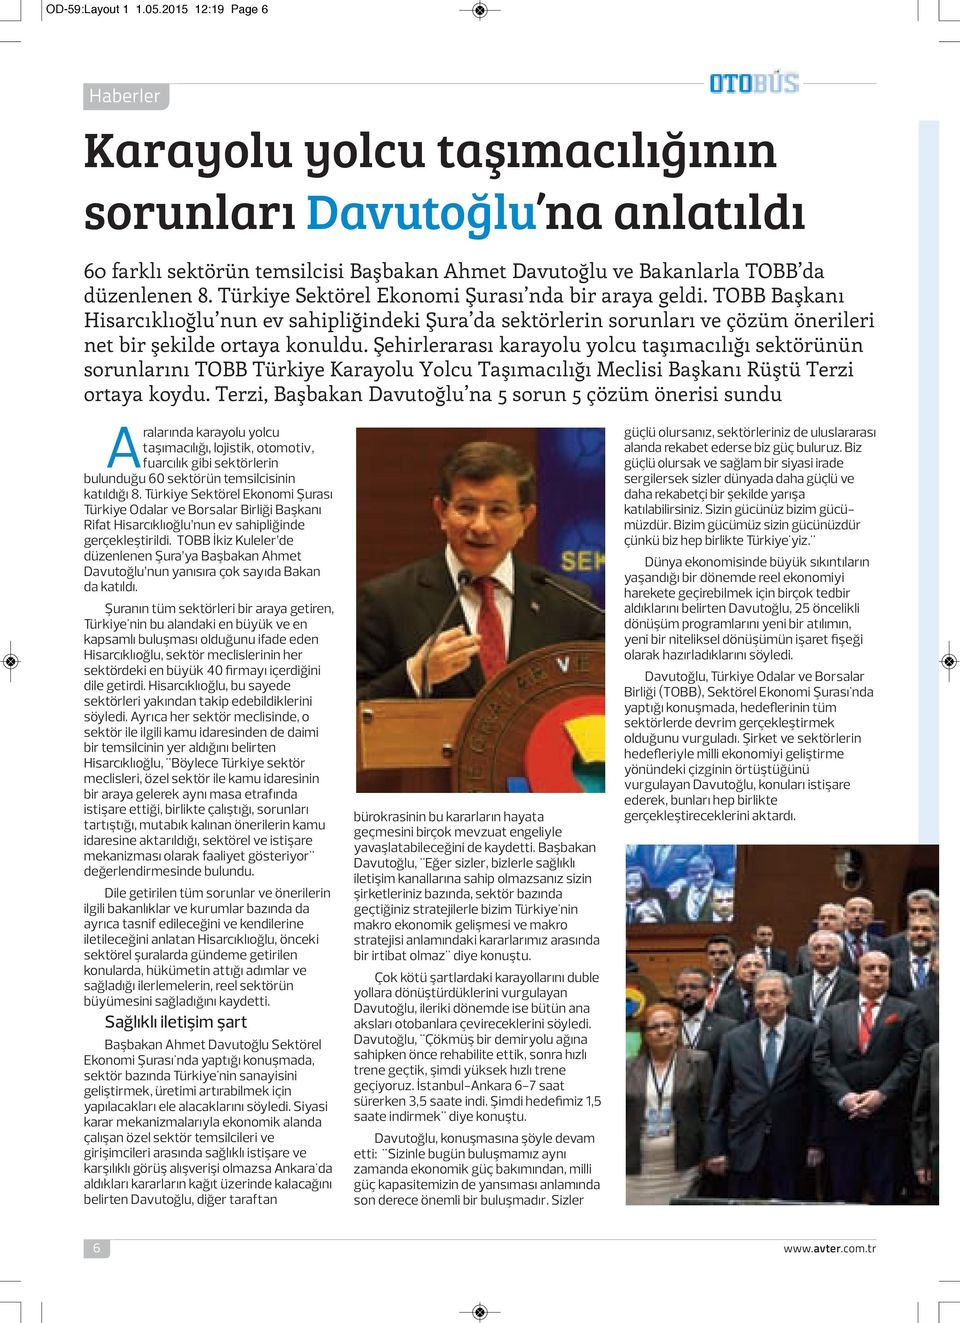 Türkiye Sektörel Ekonomi Şurası nda bir araya geldi. TOBB Başkanı Hisarcıklıoğlu nun ev sahipliğindeki Şura da sektörlerin sorunları ve çözüm önerileri net bir şekilde ortaya konuldu.